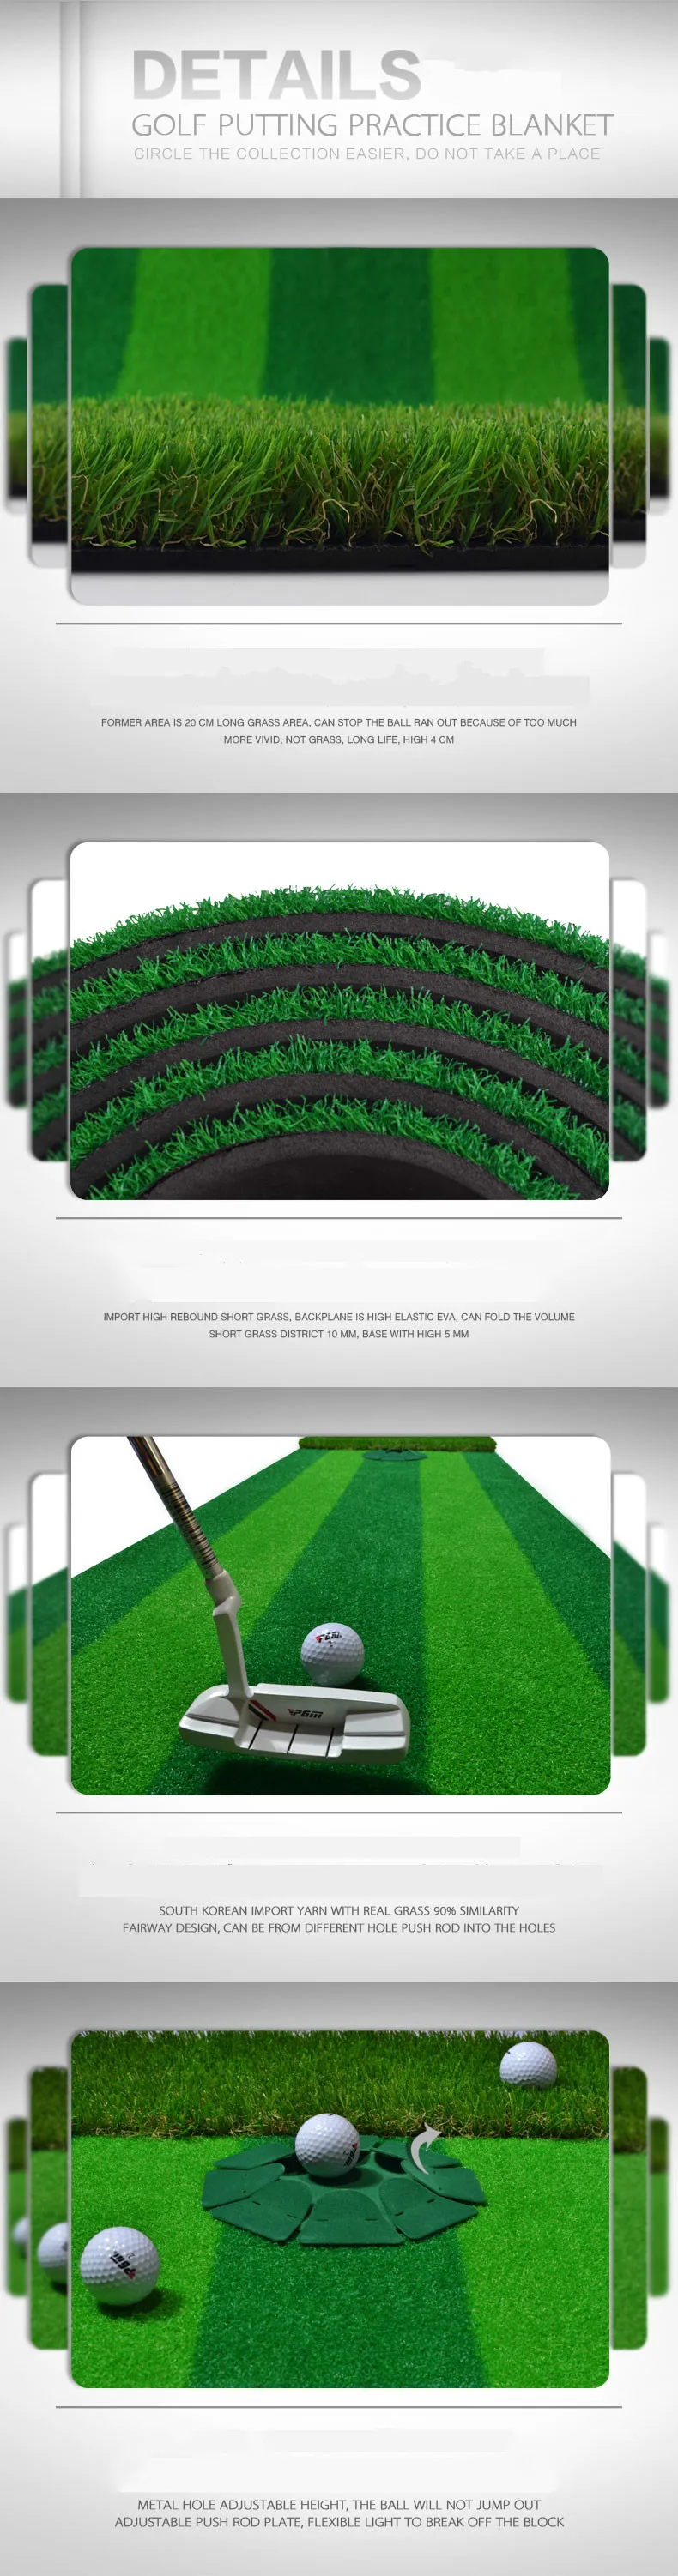 PGM новый гольф Крытый 0,58*3 м положить зеленый клюшка практика трек зеленый коврик